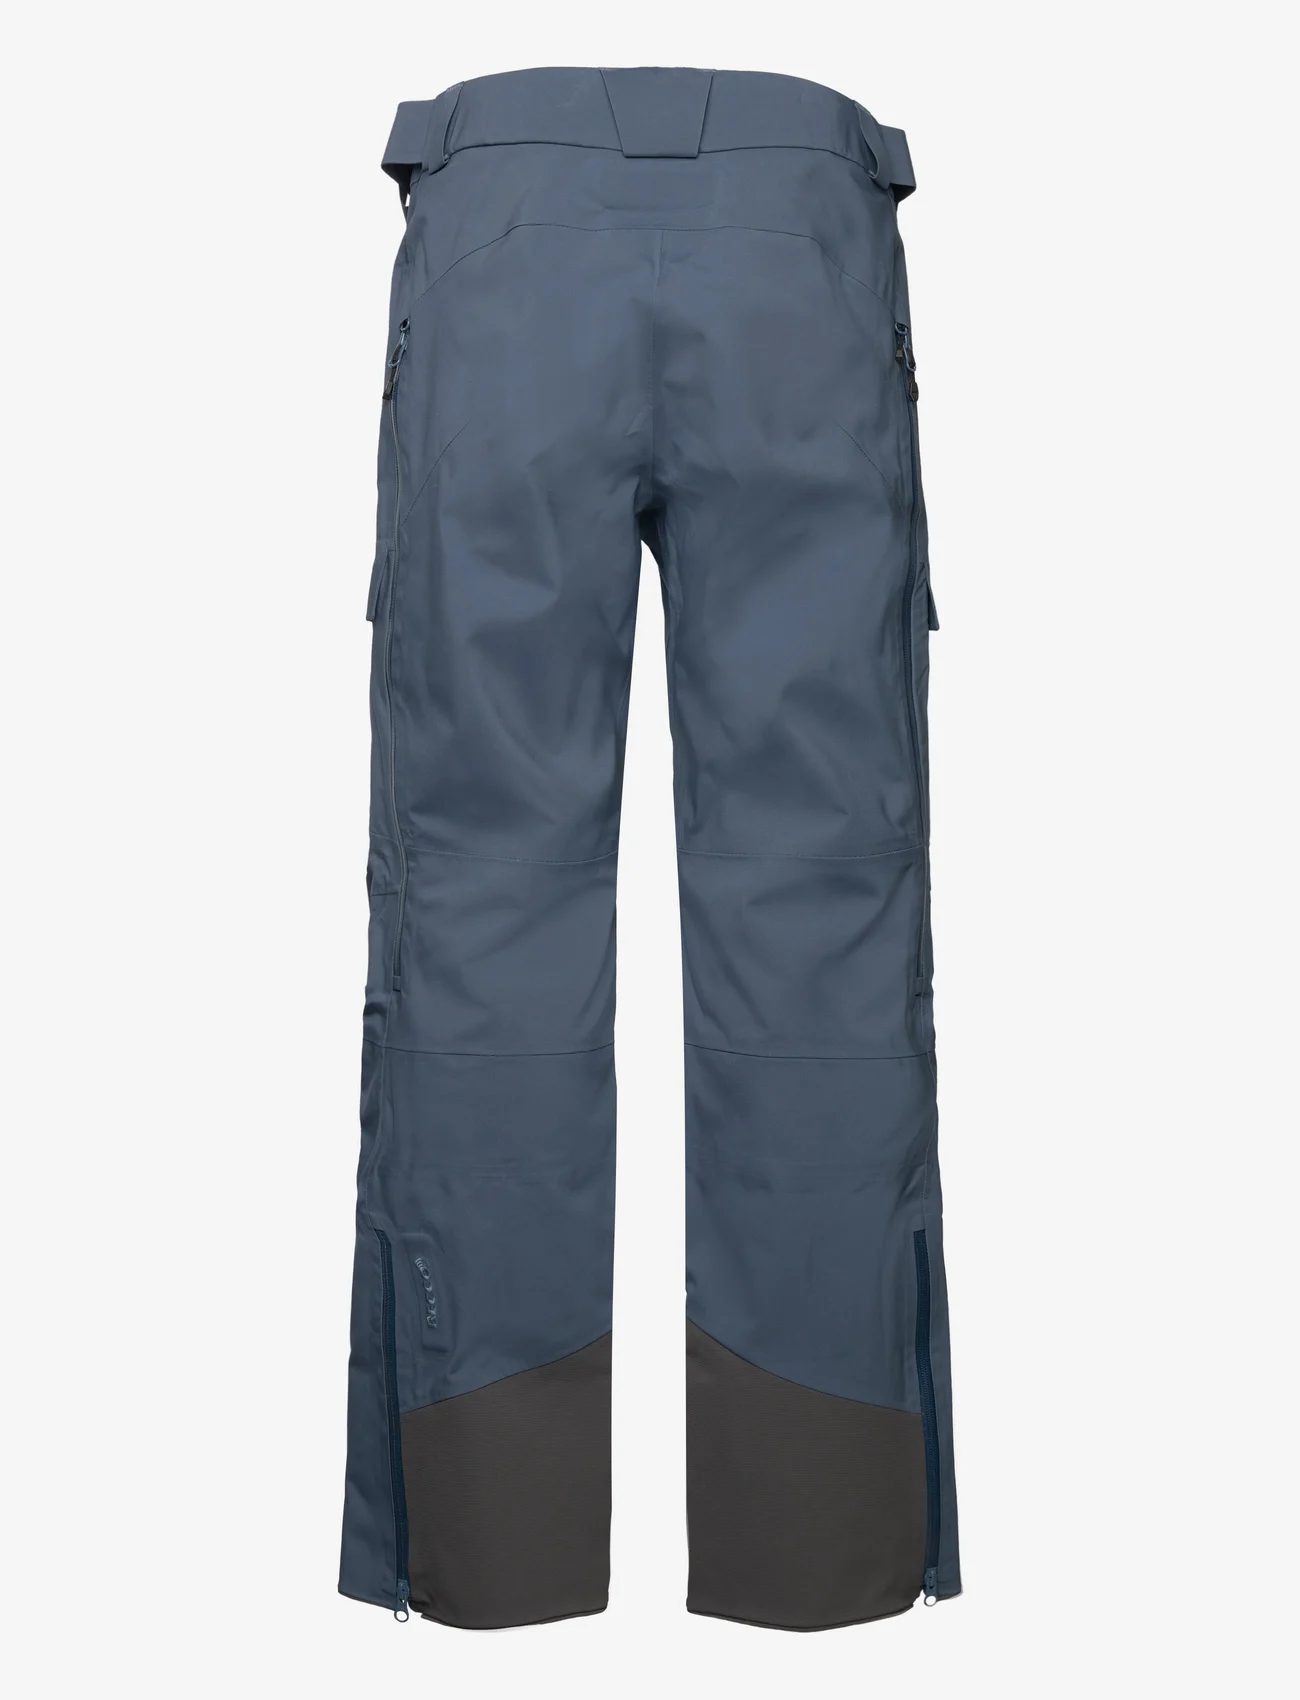 Bergans - Myrkdalen V2 3L Pants Orion Blue M - skibroeken - orion blue - 1